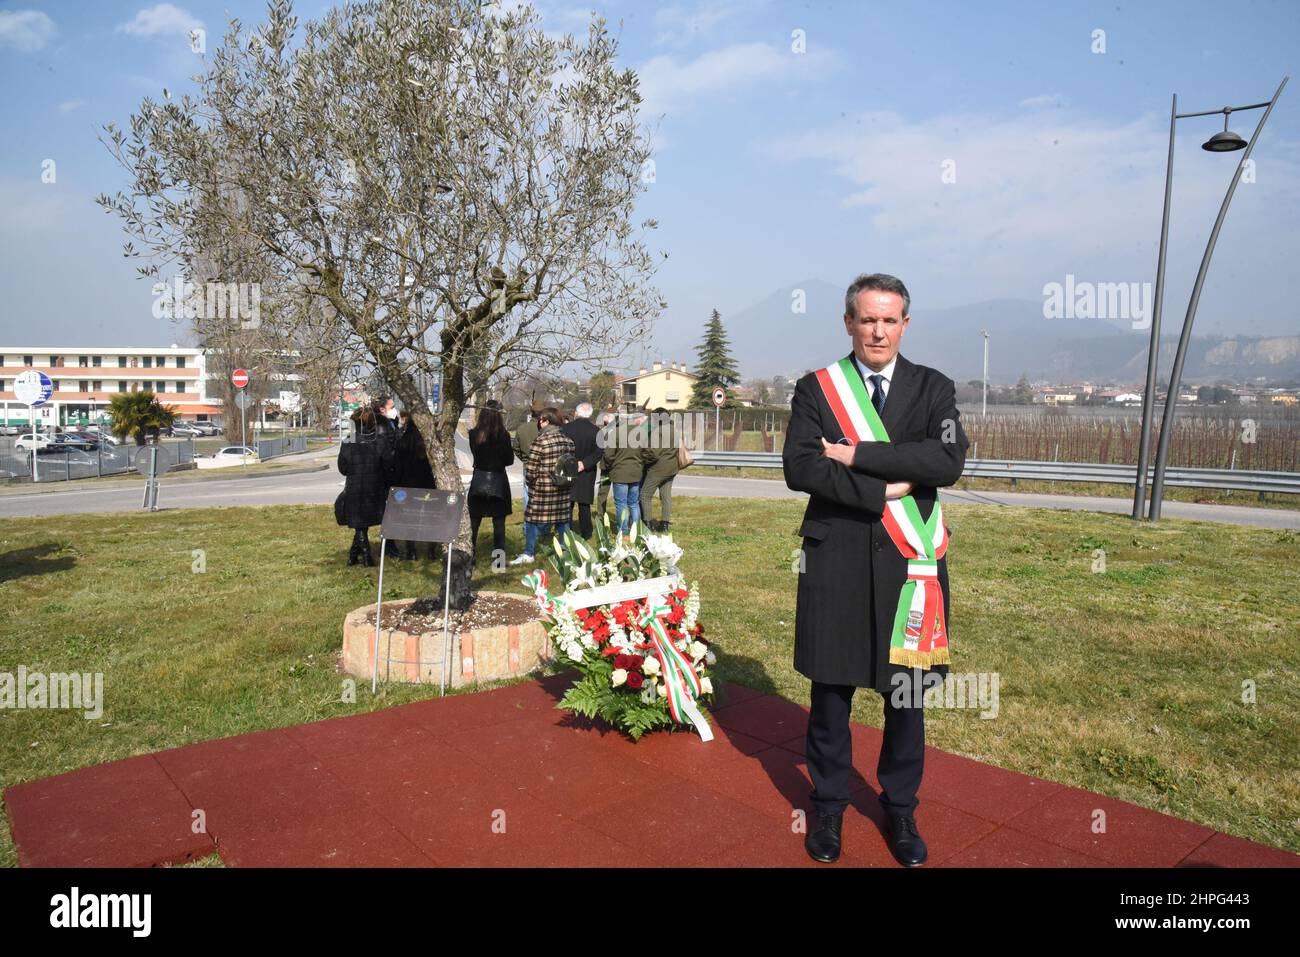 Il sindaco Giuliano Martini durante la commemorazione durante Commemorazione a 2 Anni dall'inizio della Pandemia, Nachrichten in Vo', Italia, 21 febbraio 2022 Stockfoto